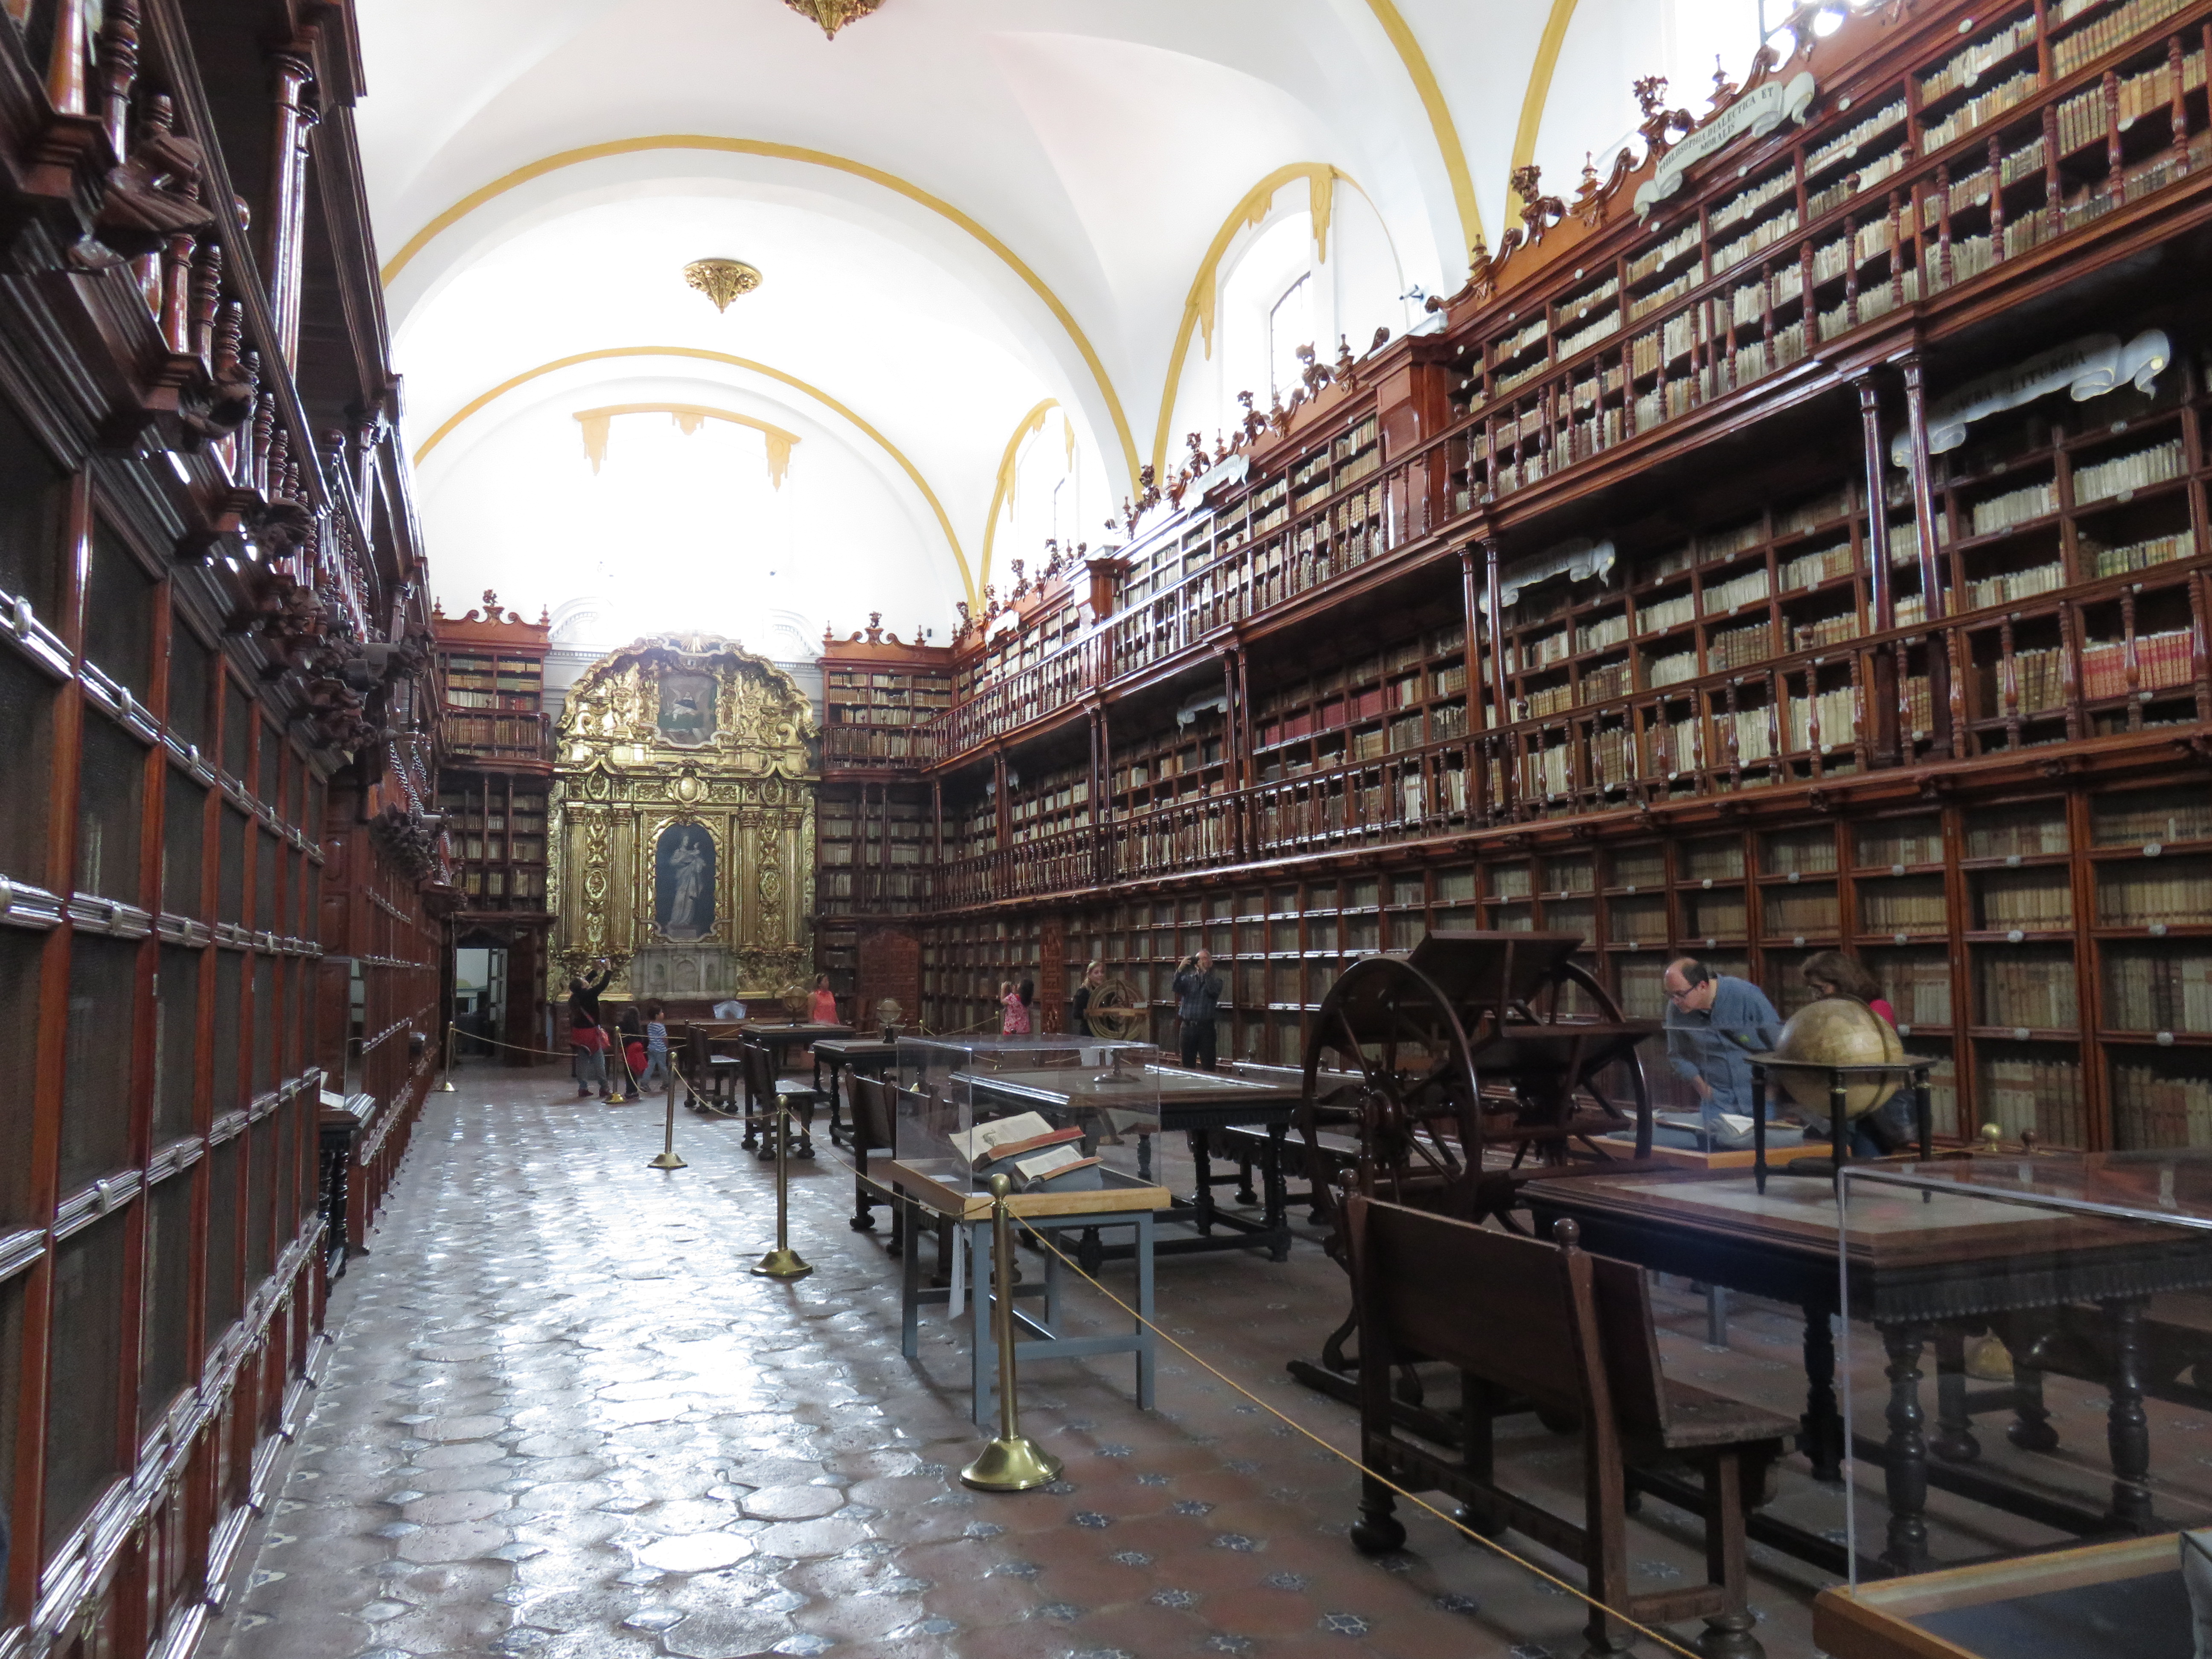 Biblioteca Palafoxiana, Puebla, Mexico. Photo by Megan Raby, 2016.